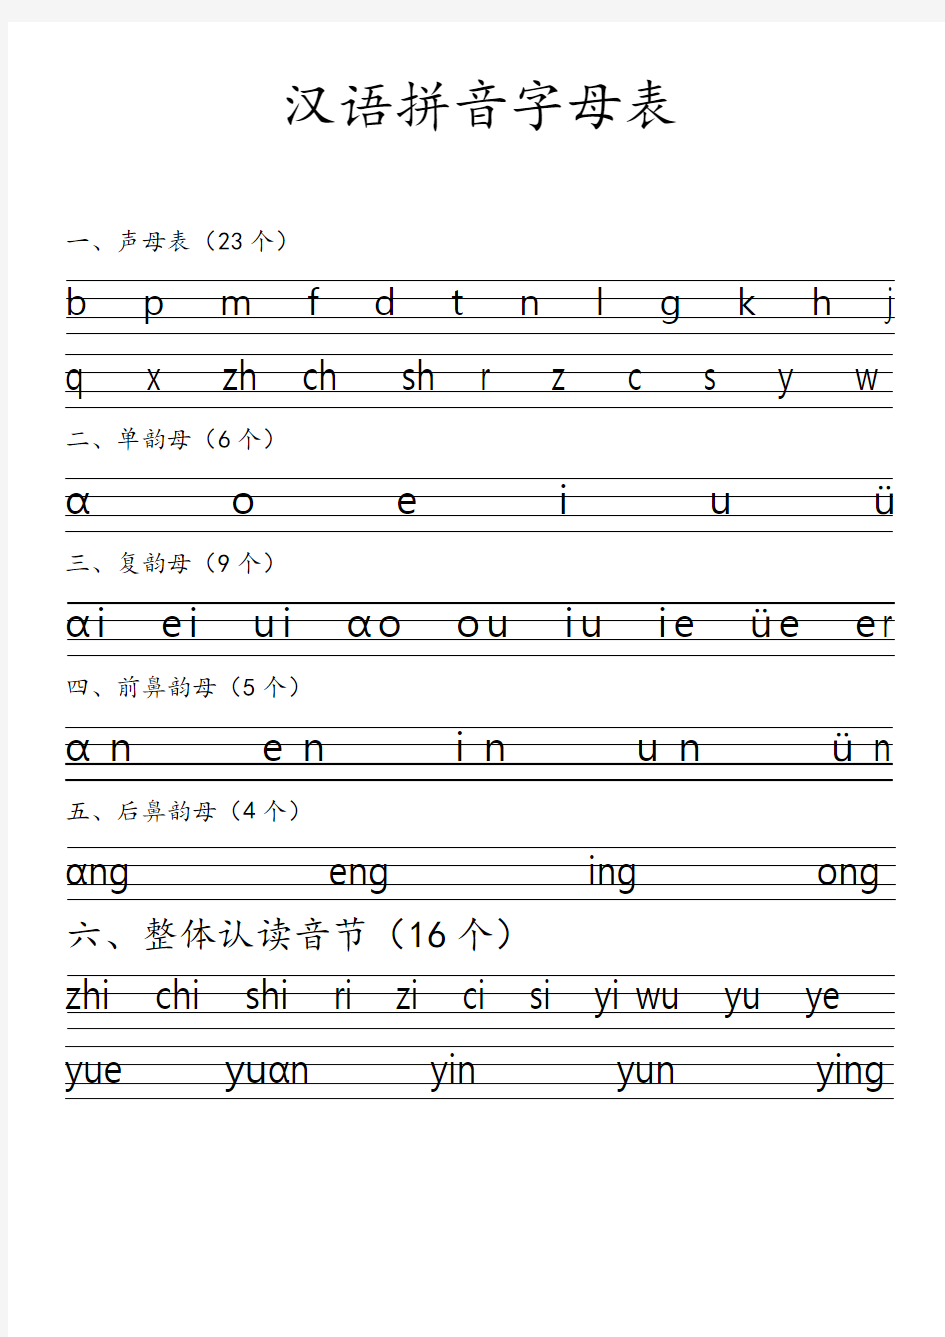 汉语拼音字母表——直接打印版